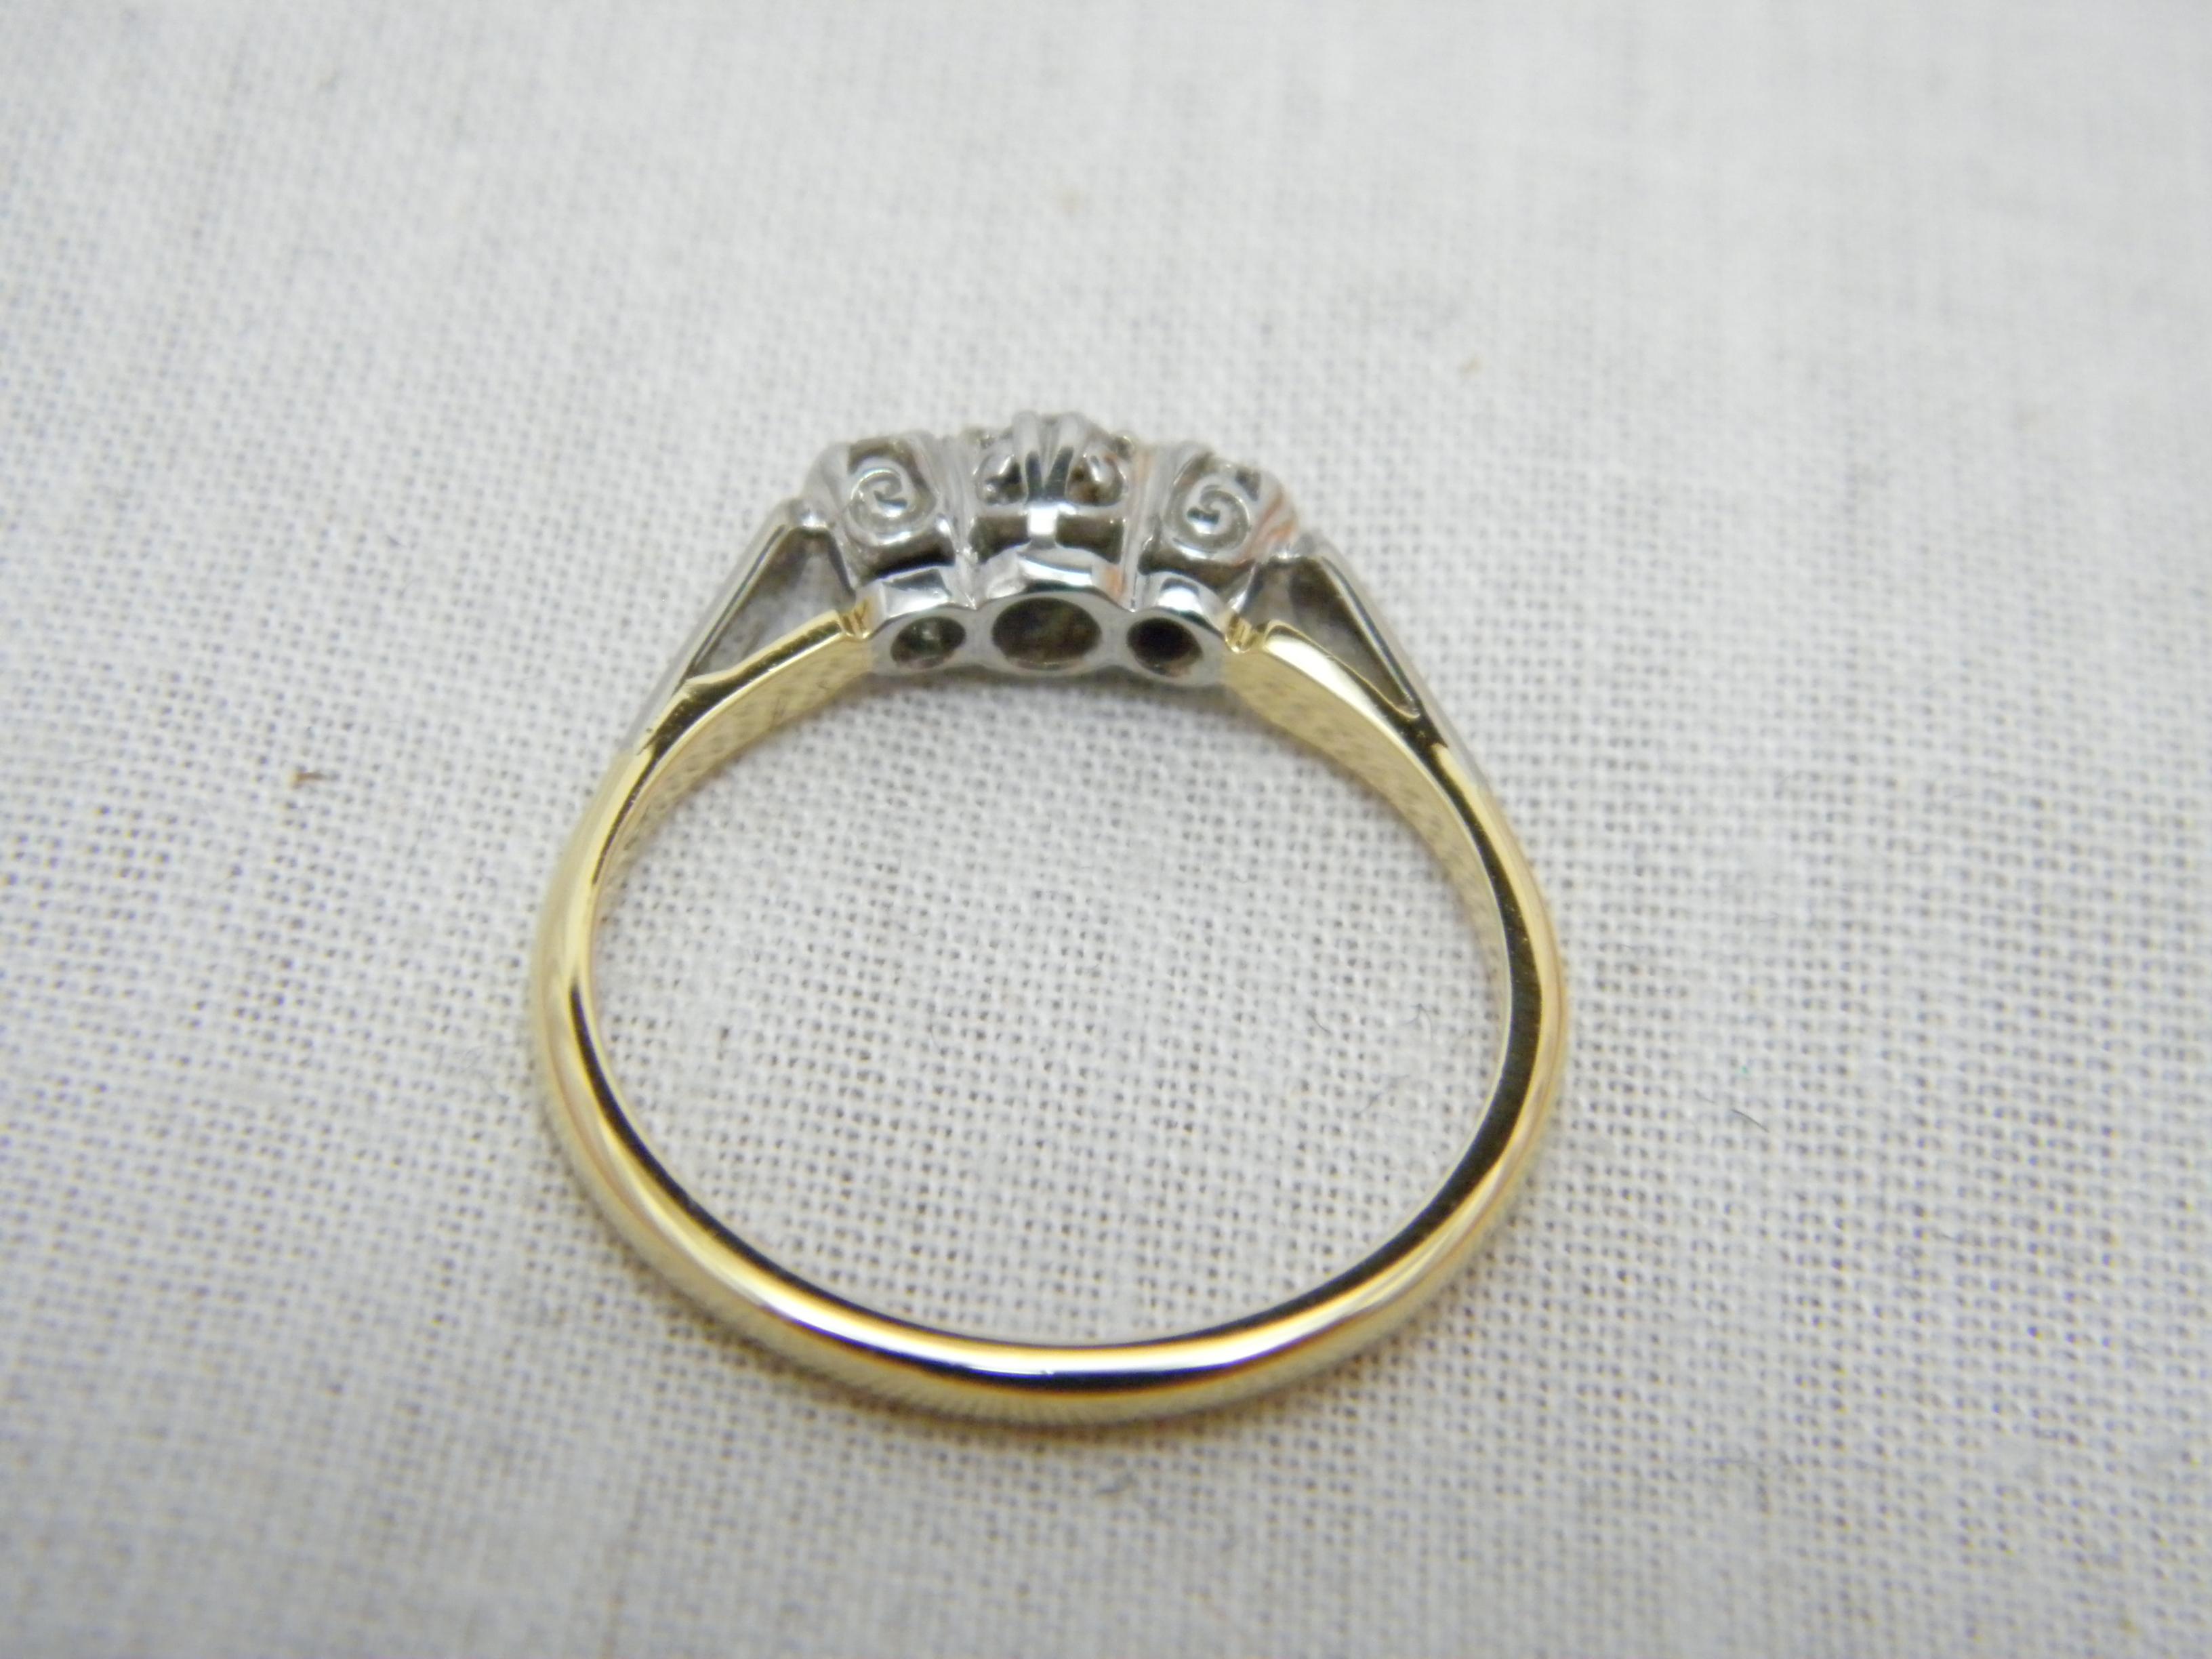 Round Cut Antique 18ct Gold Platinum Diamond Trilogy Engagement Ring Size L 6 750 950 For Sale